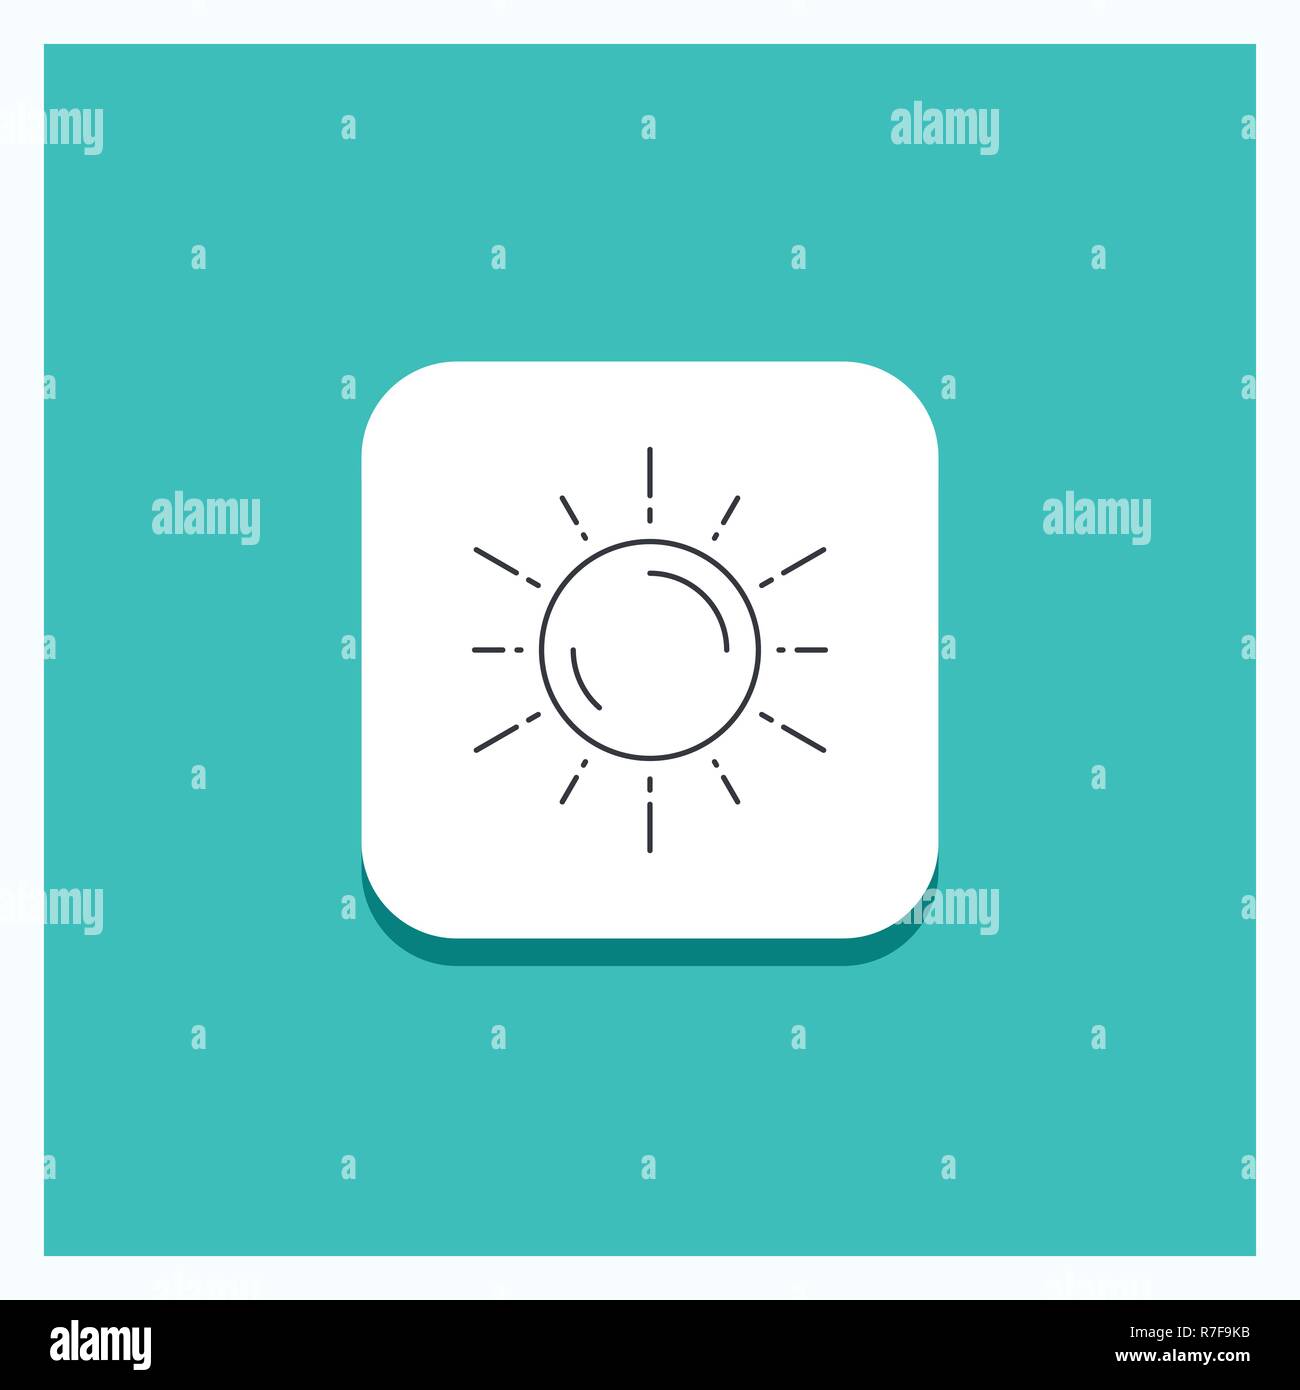 Botón redondo para sol, espacio, planeta, astronomía, meteorología icono de línea de fondo turquesa Ilustración del Vector